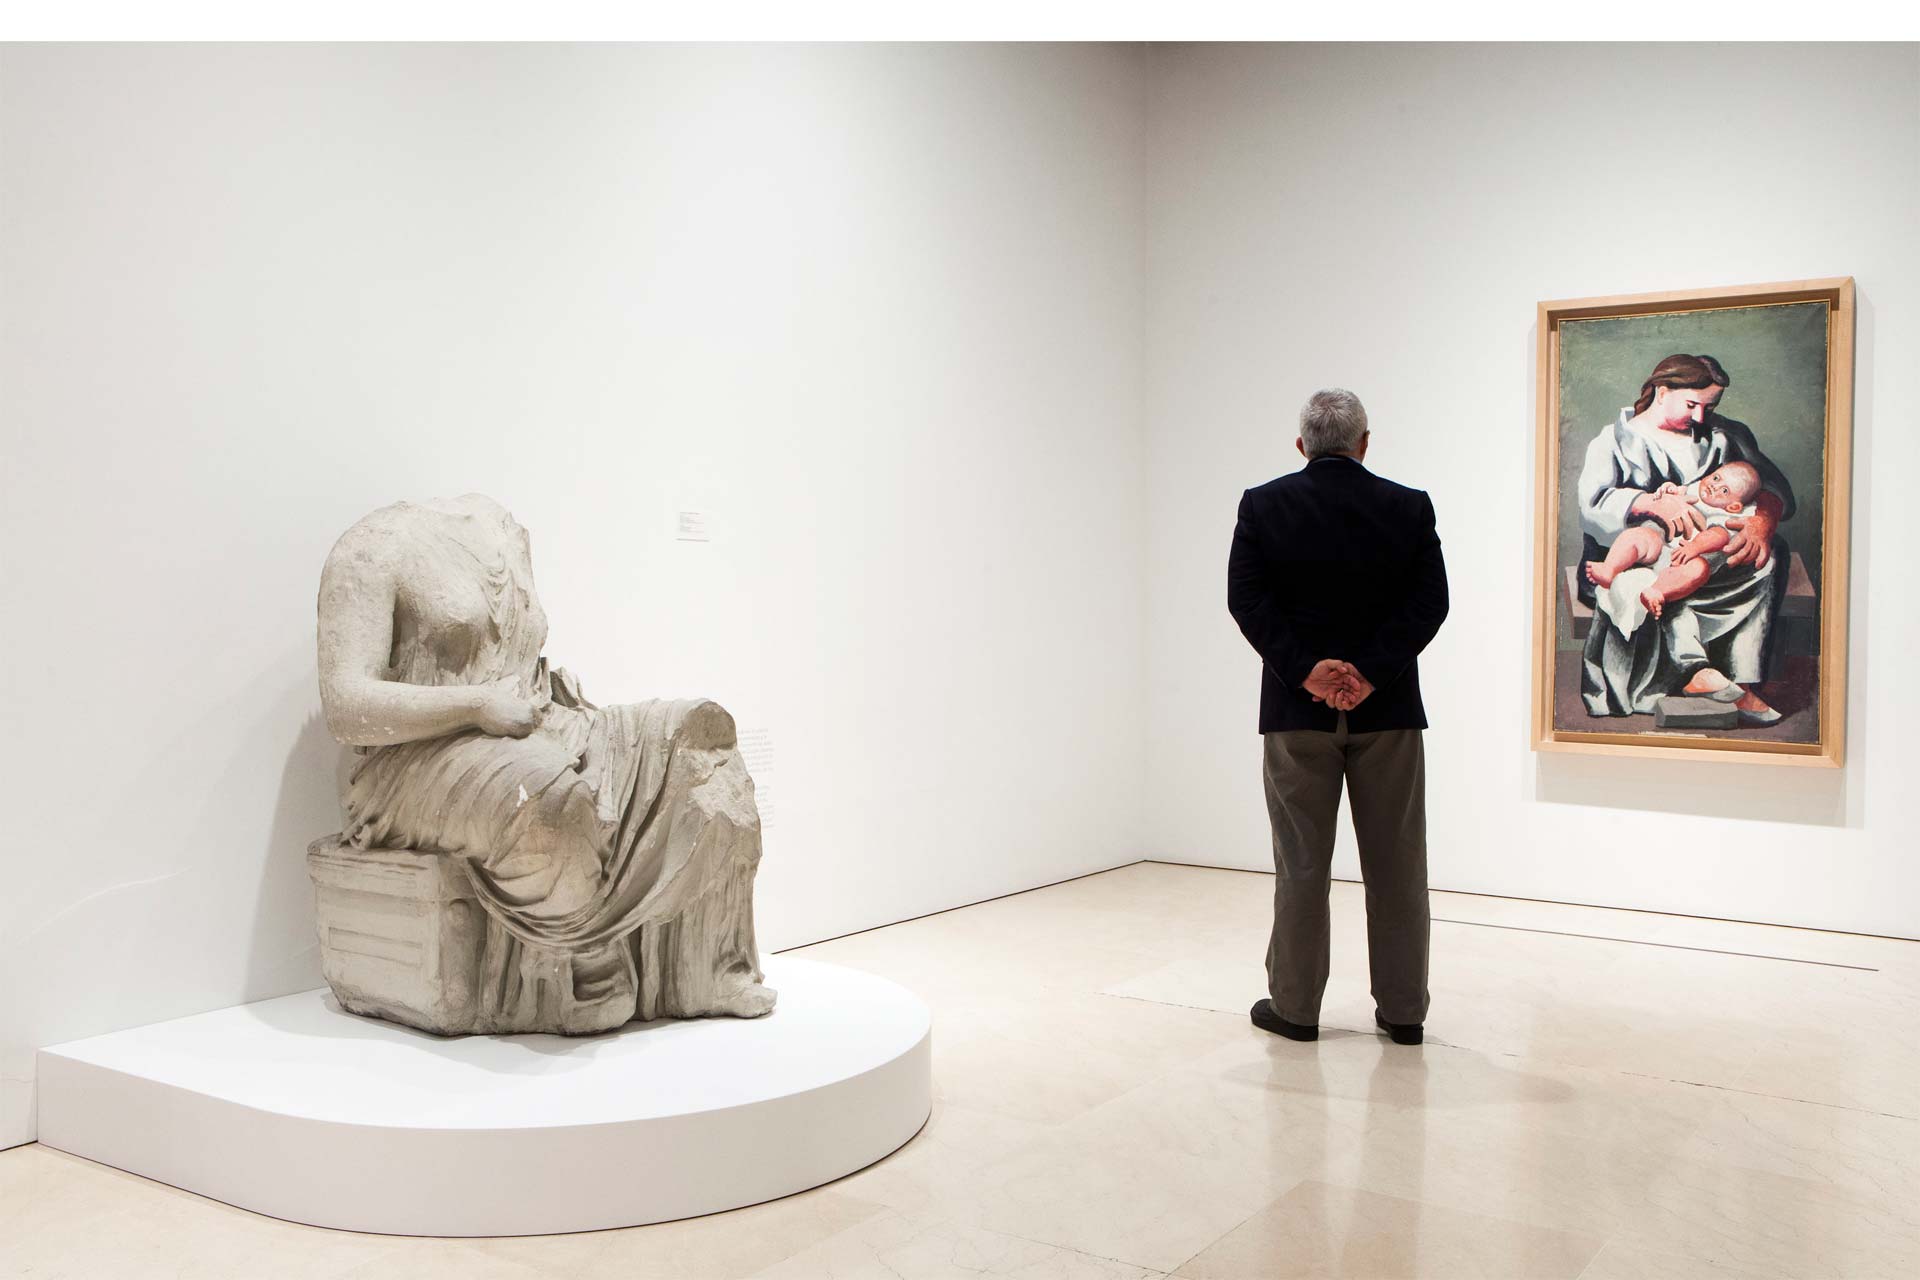 Las mismas se encuentran en una muestra que presenta el museo parisino que lleva el nombre del artista